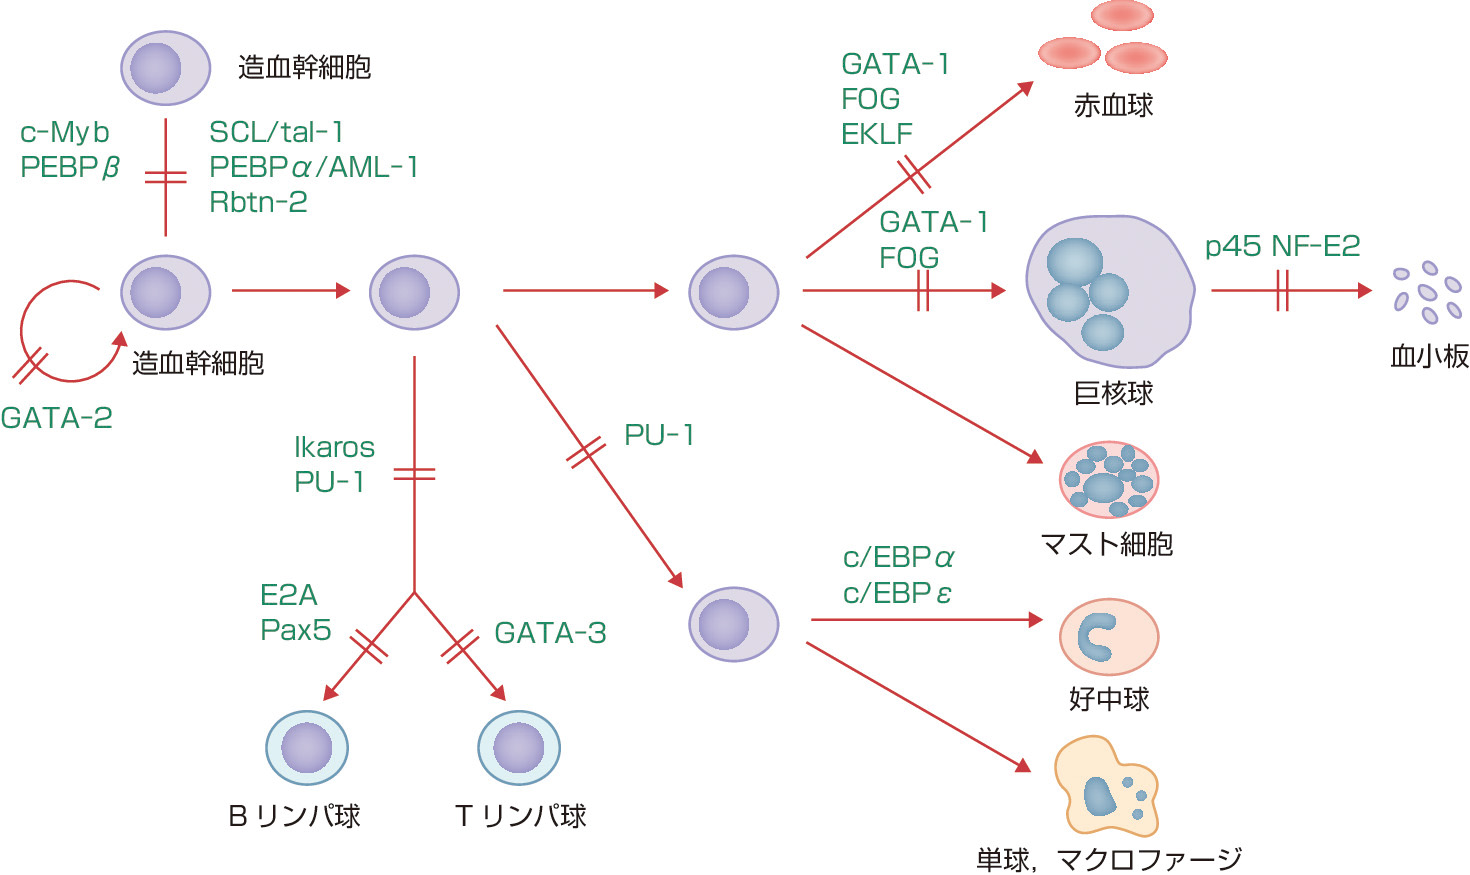 ⓔ図17-2-1　血球発生に必須の転写因子 (Shivdasani. RA, Orkin SH: Blood, 1996; 87: 4025–4039より作成) それぞれの血球の発生構造においては図に示す転写因子が必須である．これらの転写因子は各血球の特性，機能に関わる分子の発現を誘導する．